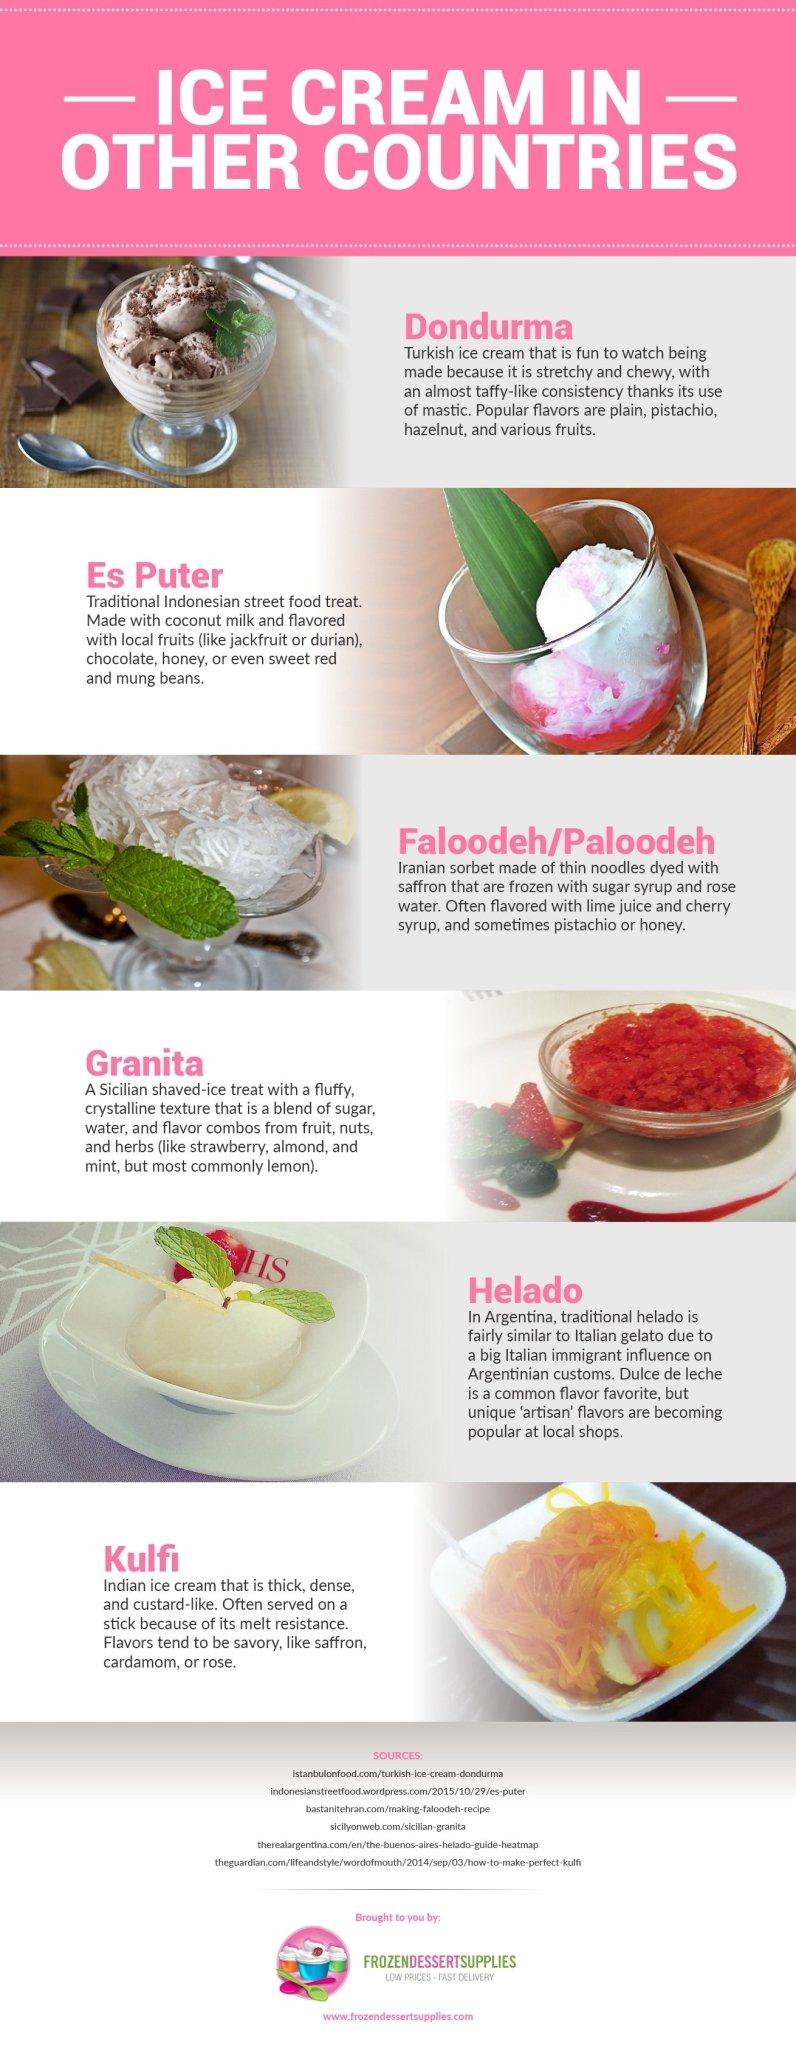 Ice Cream Around the World - Frozen Dessert Supplies